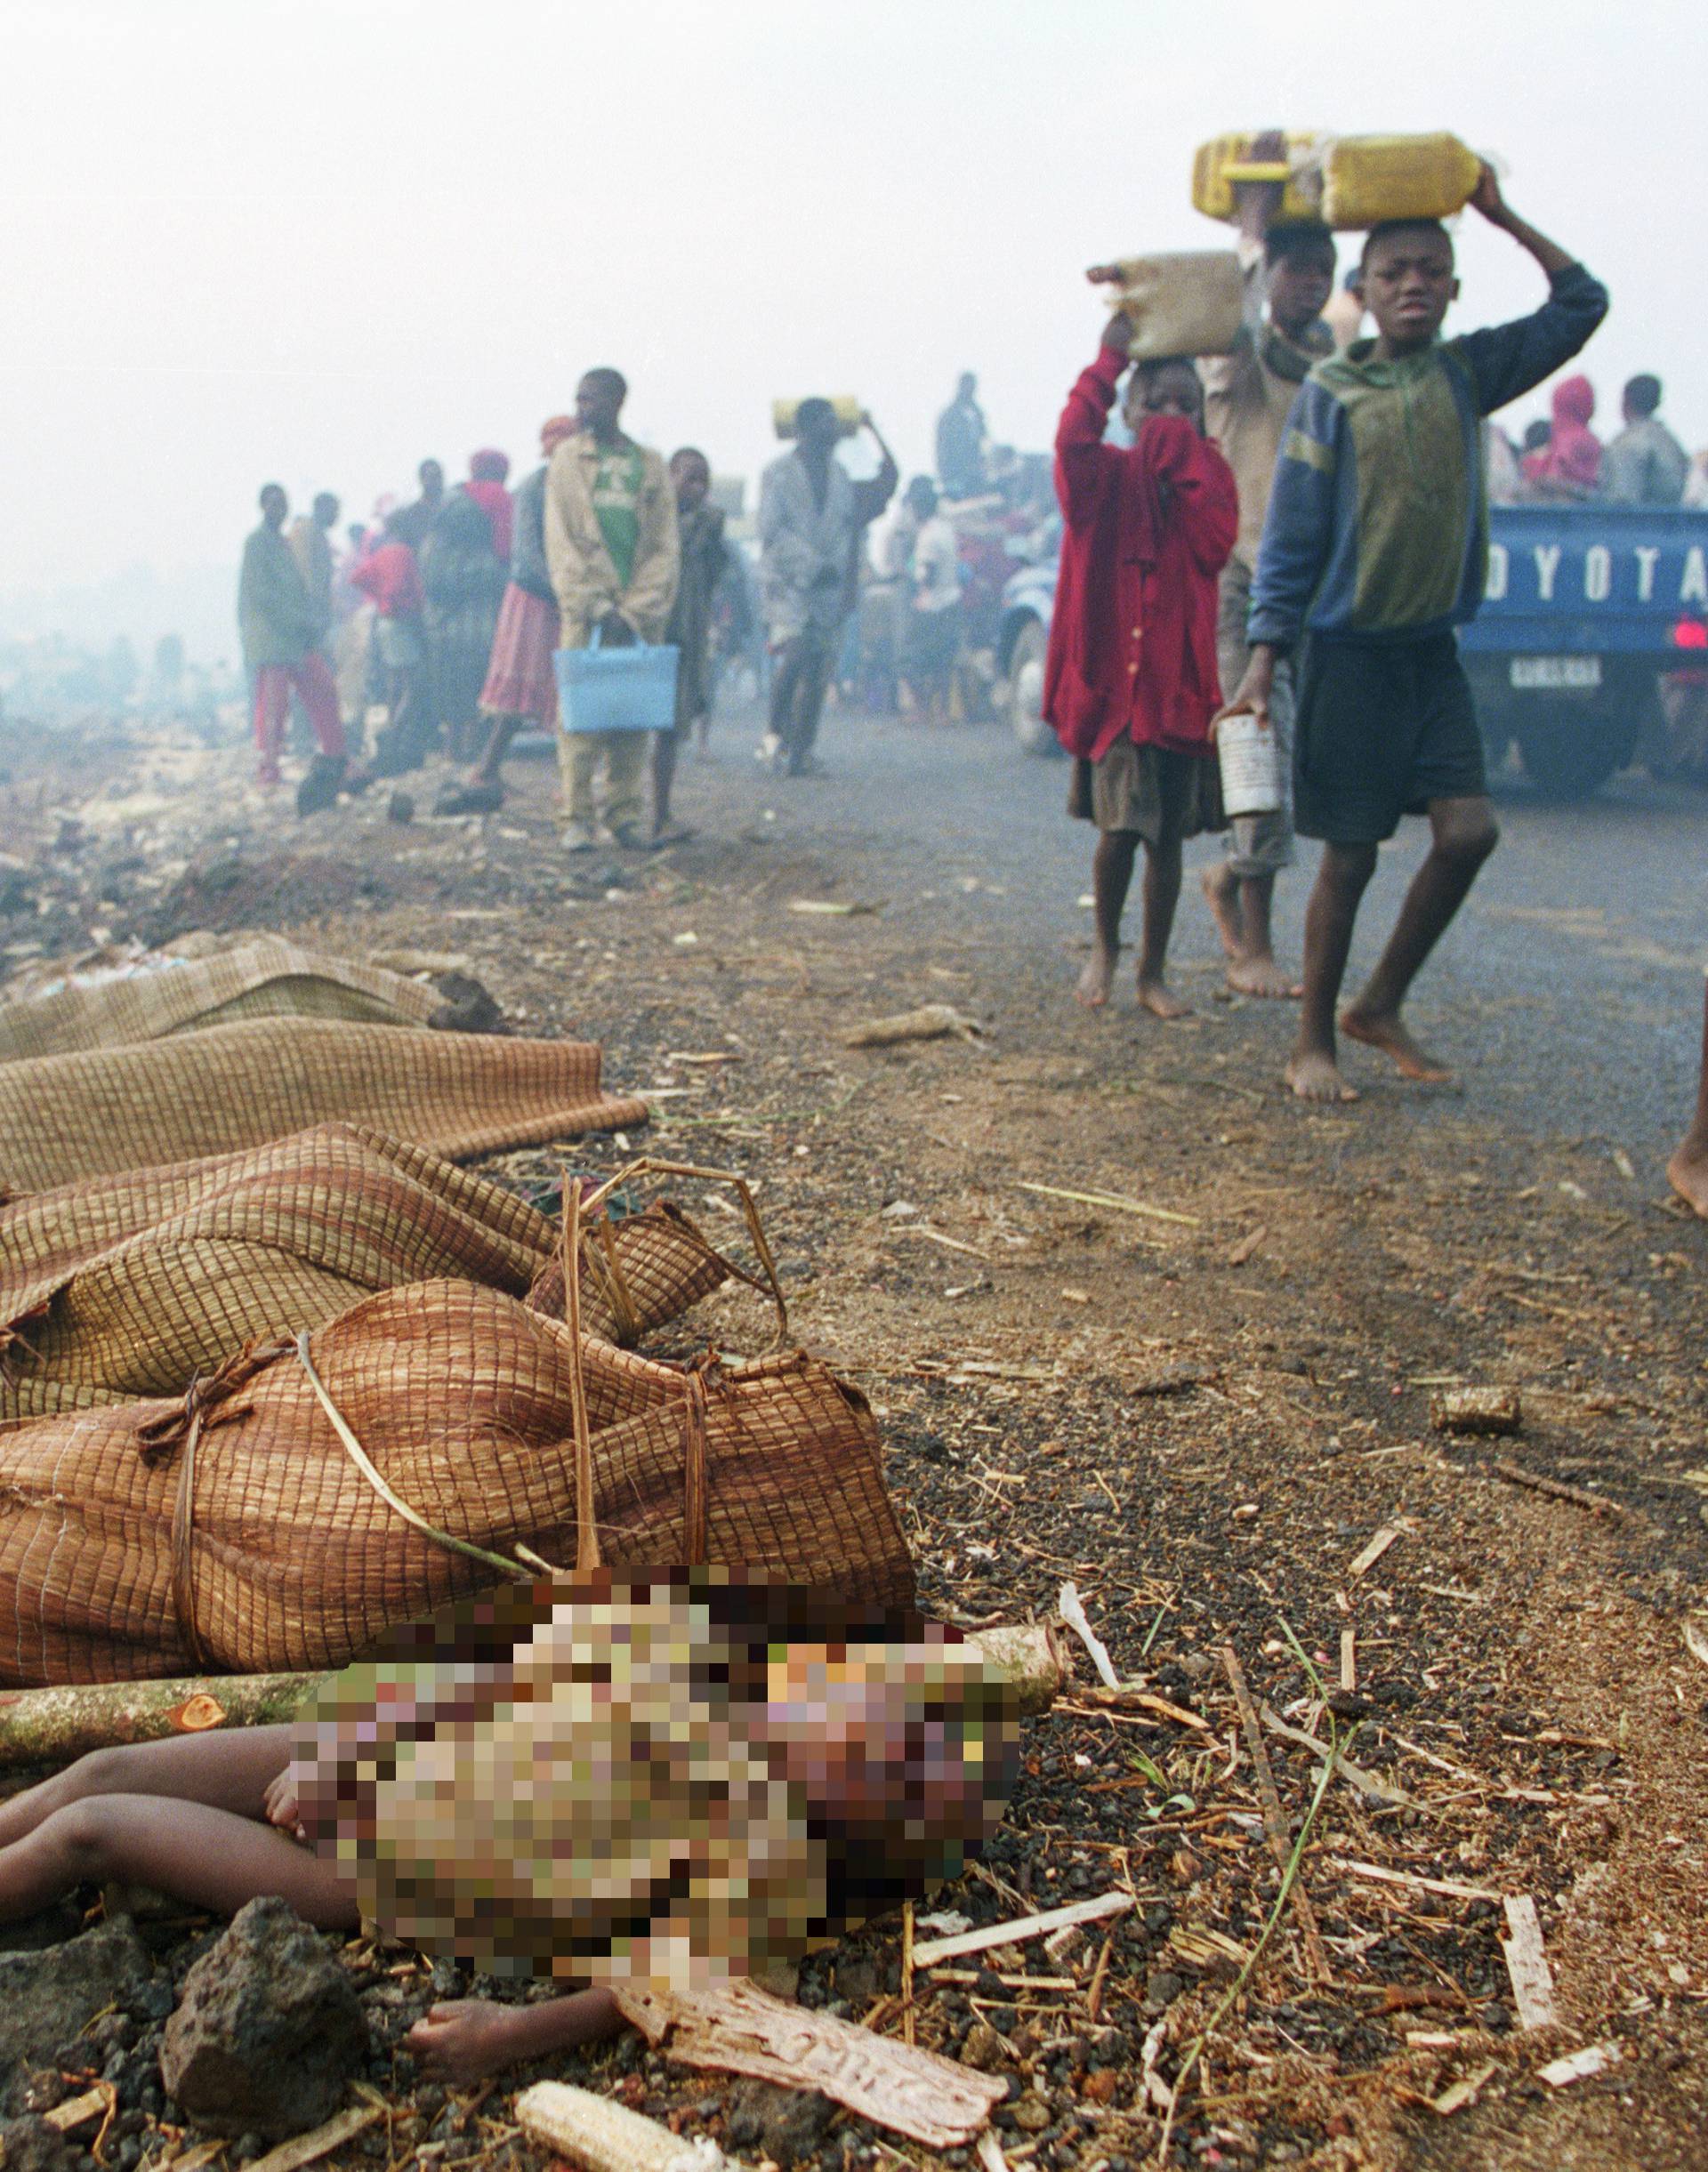 Genocid u Ruandi: Za 100 dana ubijeno je gotovo milijun ljudi